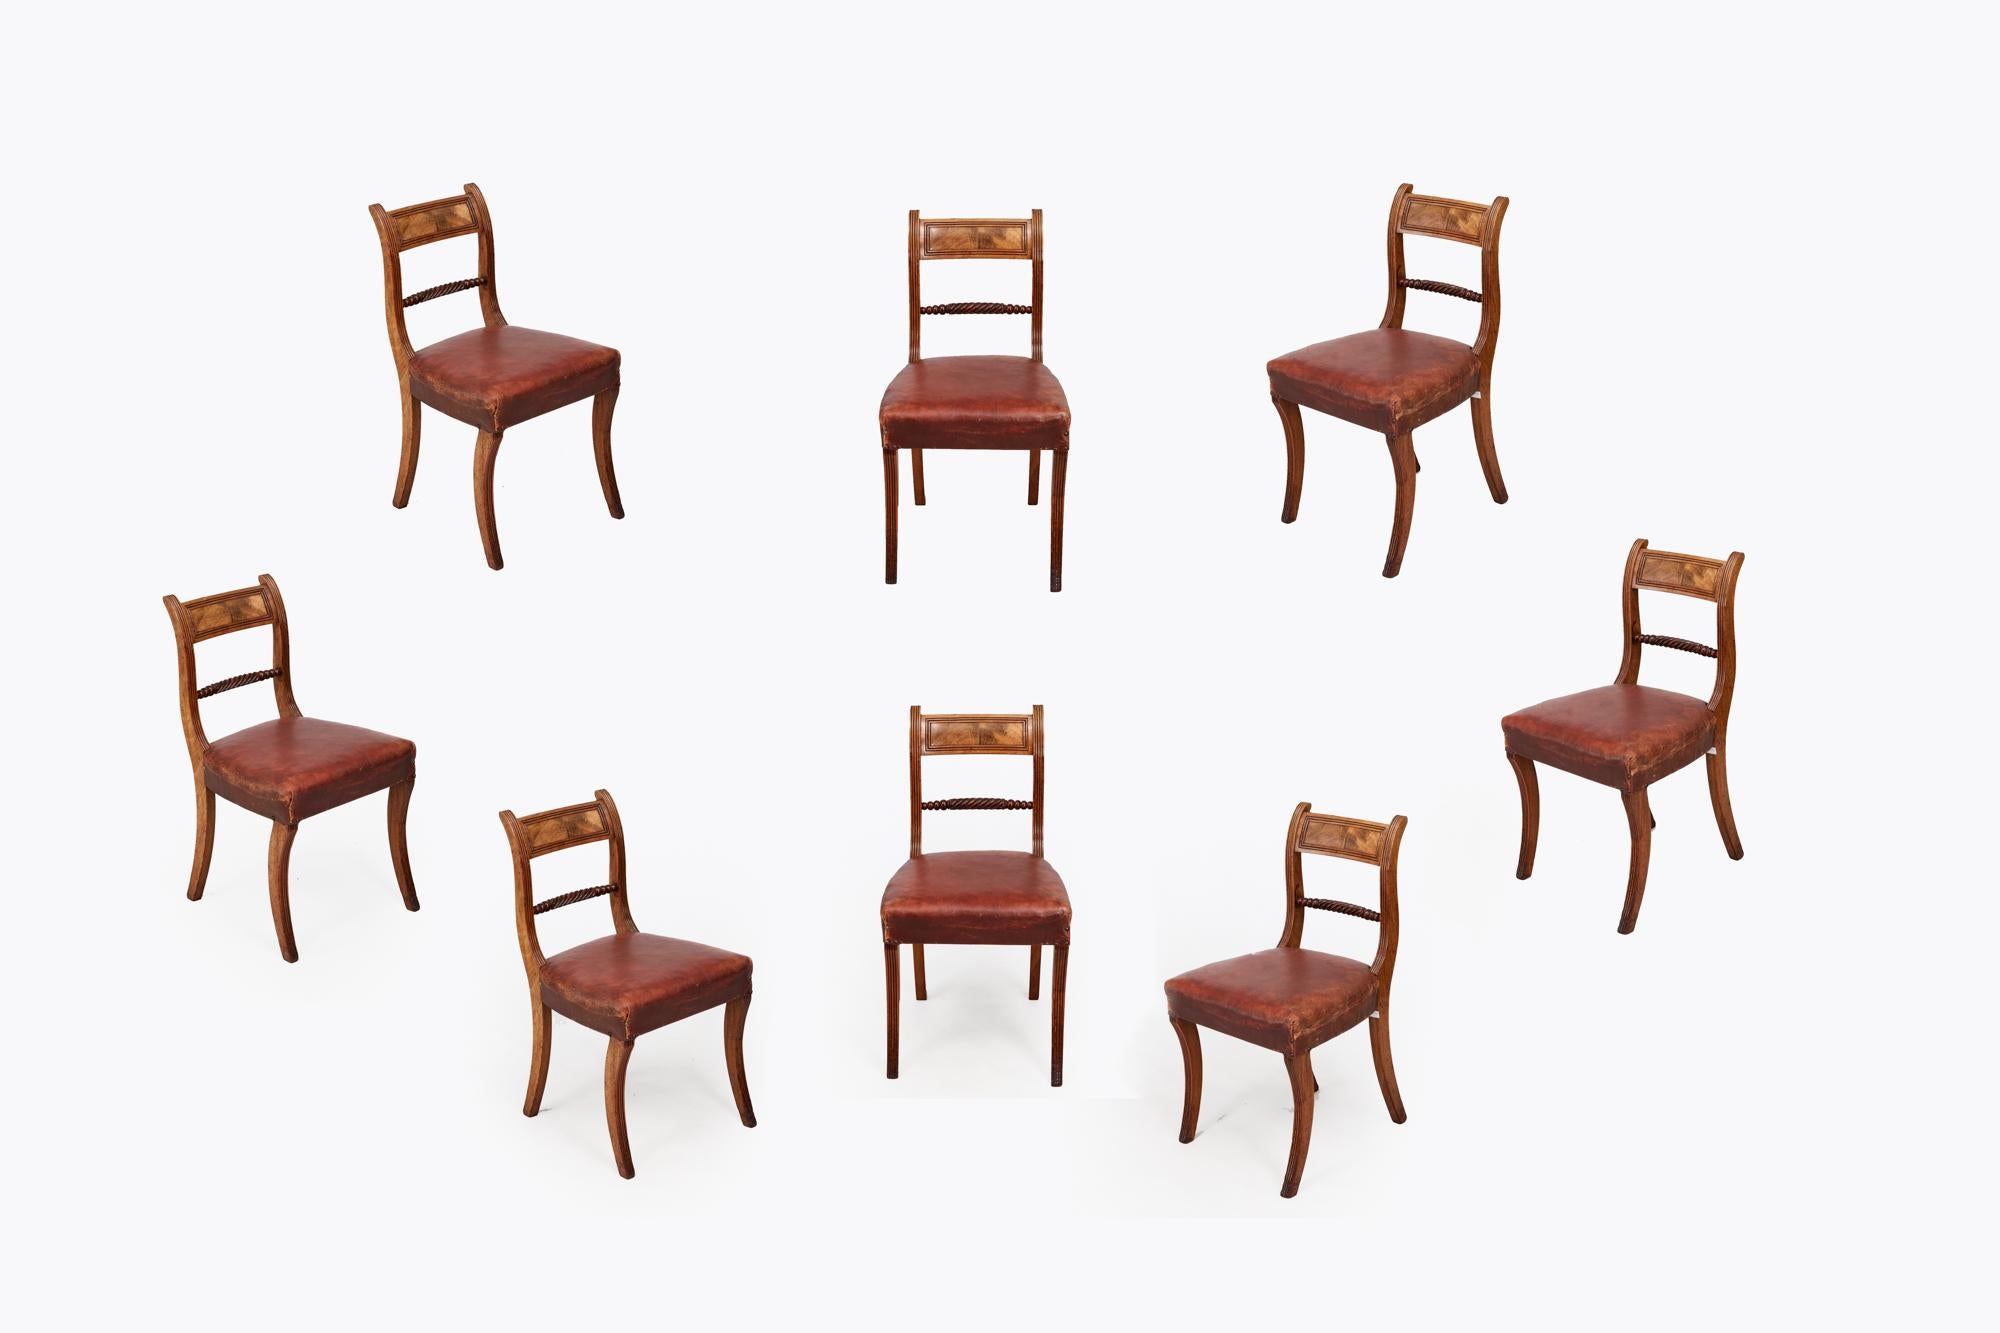 Satz von acht Esszimmerstühlen aus hellem Mahagoni aus dem 19. Jahrhundert, mit geschlossenen Rückenlehnen und Mittelschienen aus Teppichboden. Die Sitze sind mit Leder bezogen, das eine gut gealterte Patina aufweist, und alle acht Sitze stehen auf